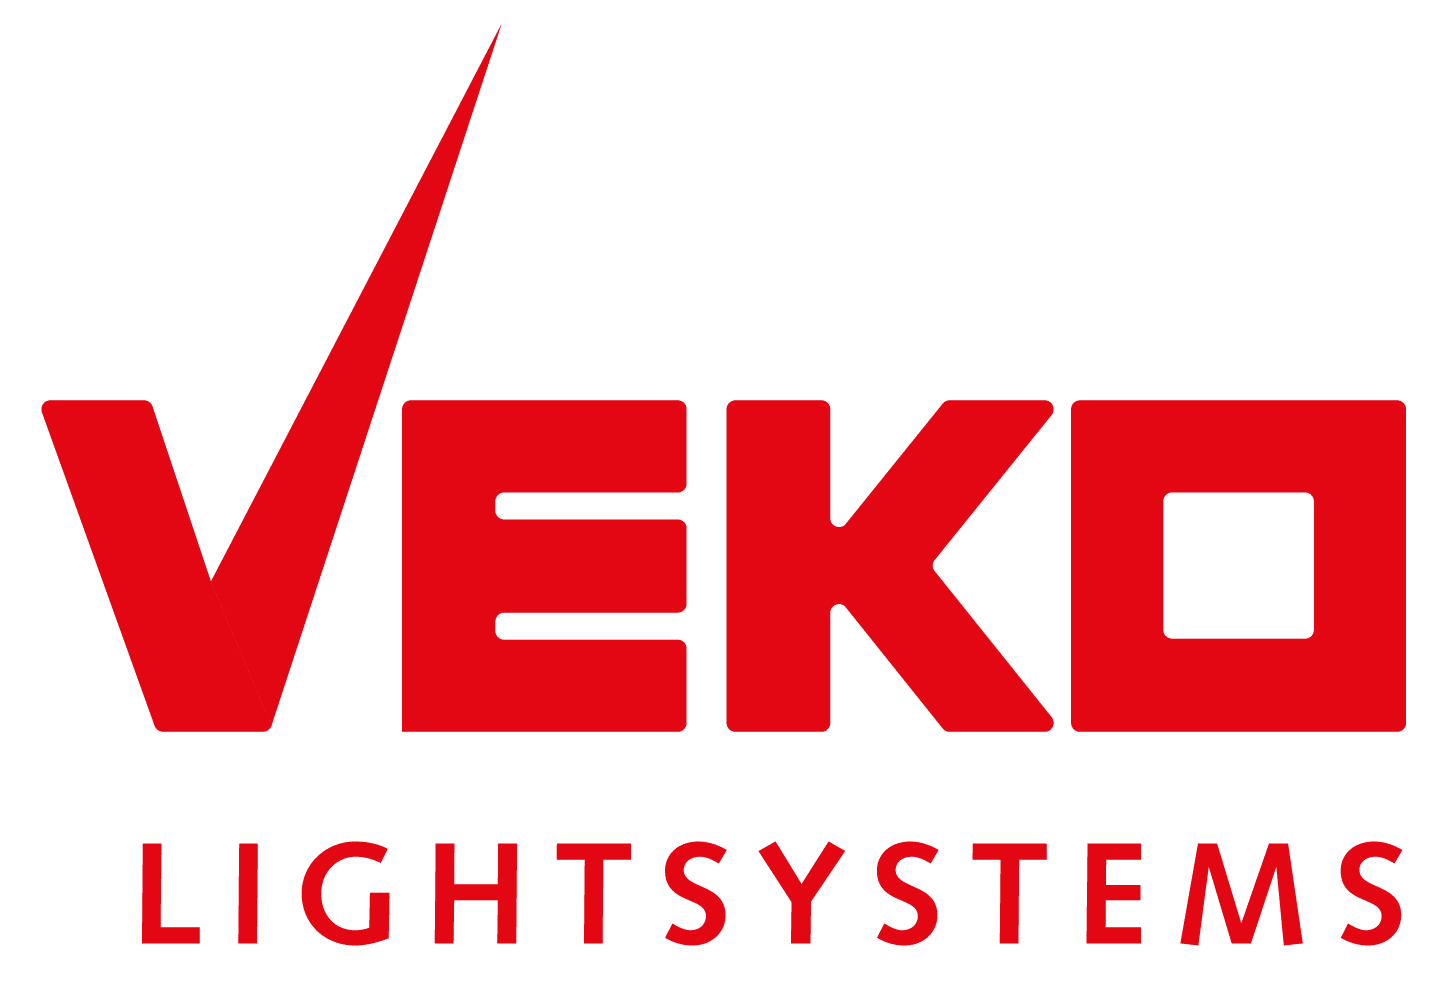 Veko Lightsystems international BV